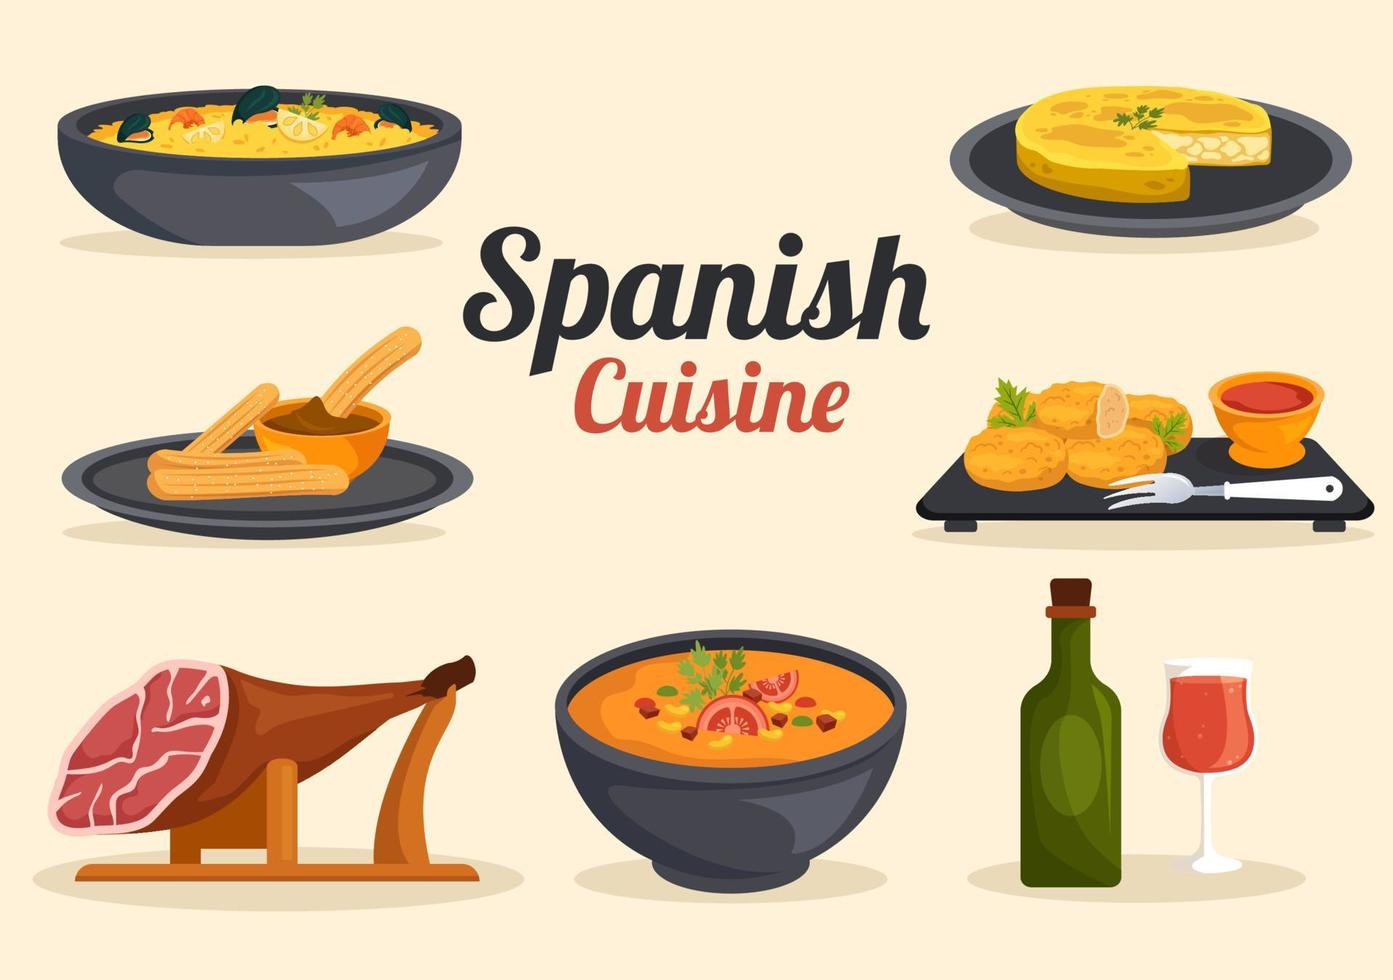 restaurante de menu de cozinha de comida espanhola com várias receitas de pratos tradicionais na ilustração de modelos desenhados à mão de desenhos animados planos vetor